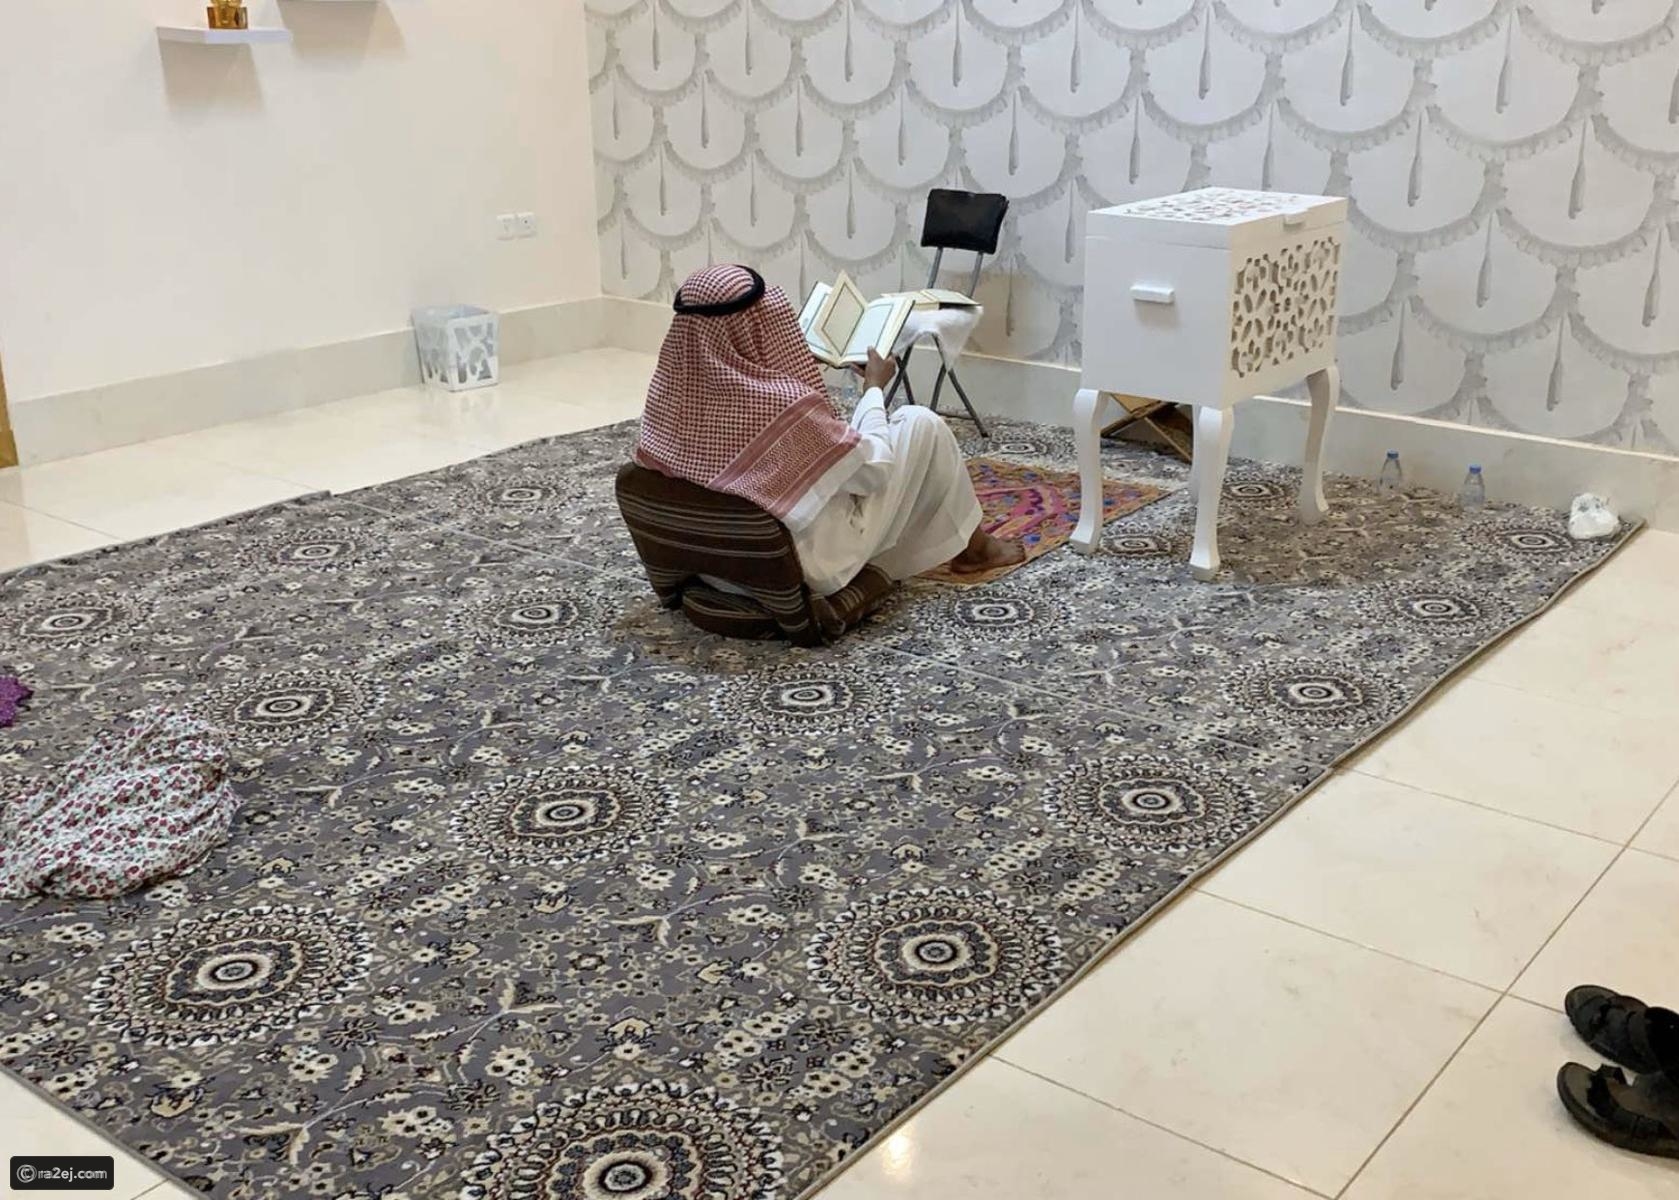 شاب سعودي يصور والده وهو يستعد لصلاة التراويح في منزله